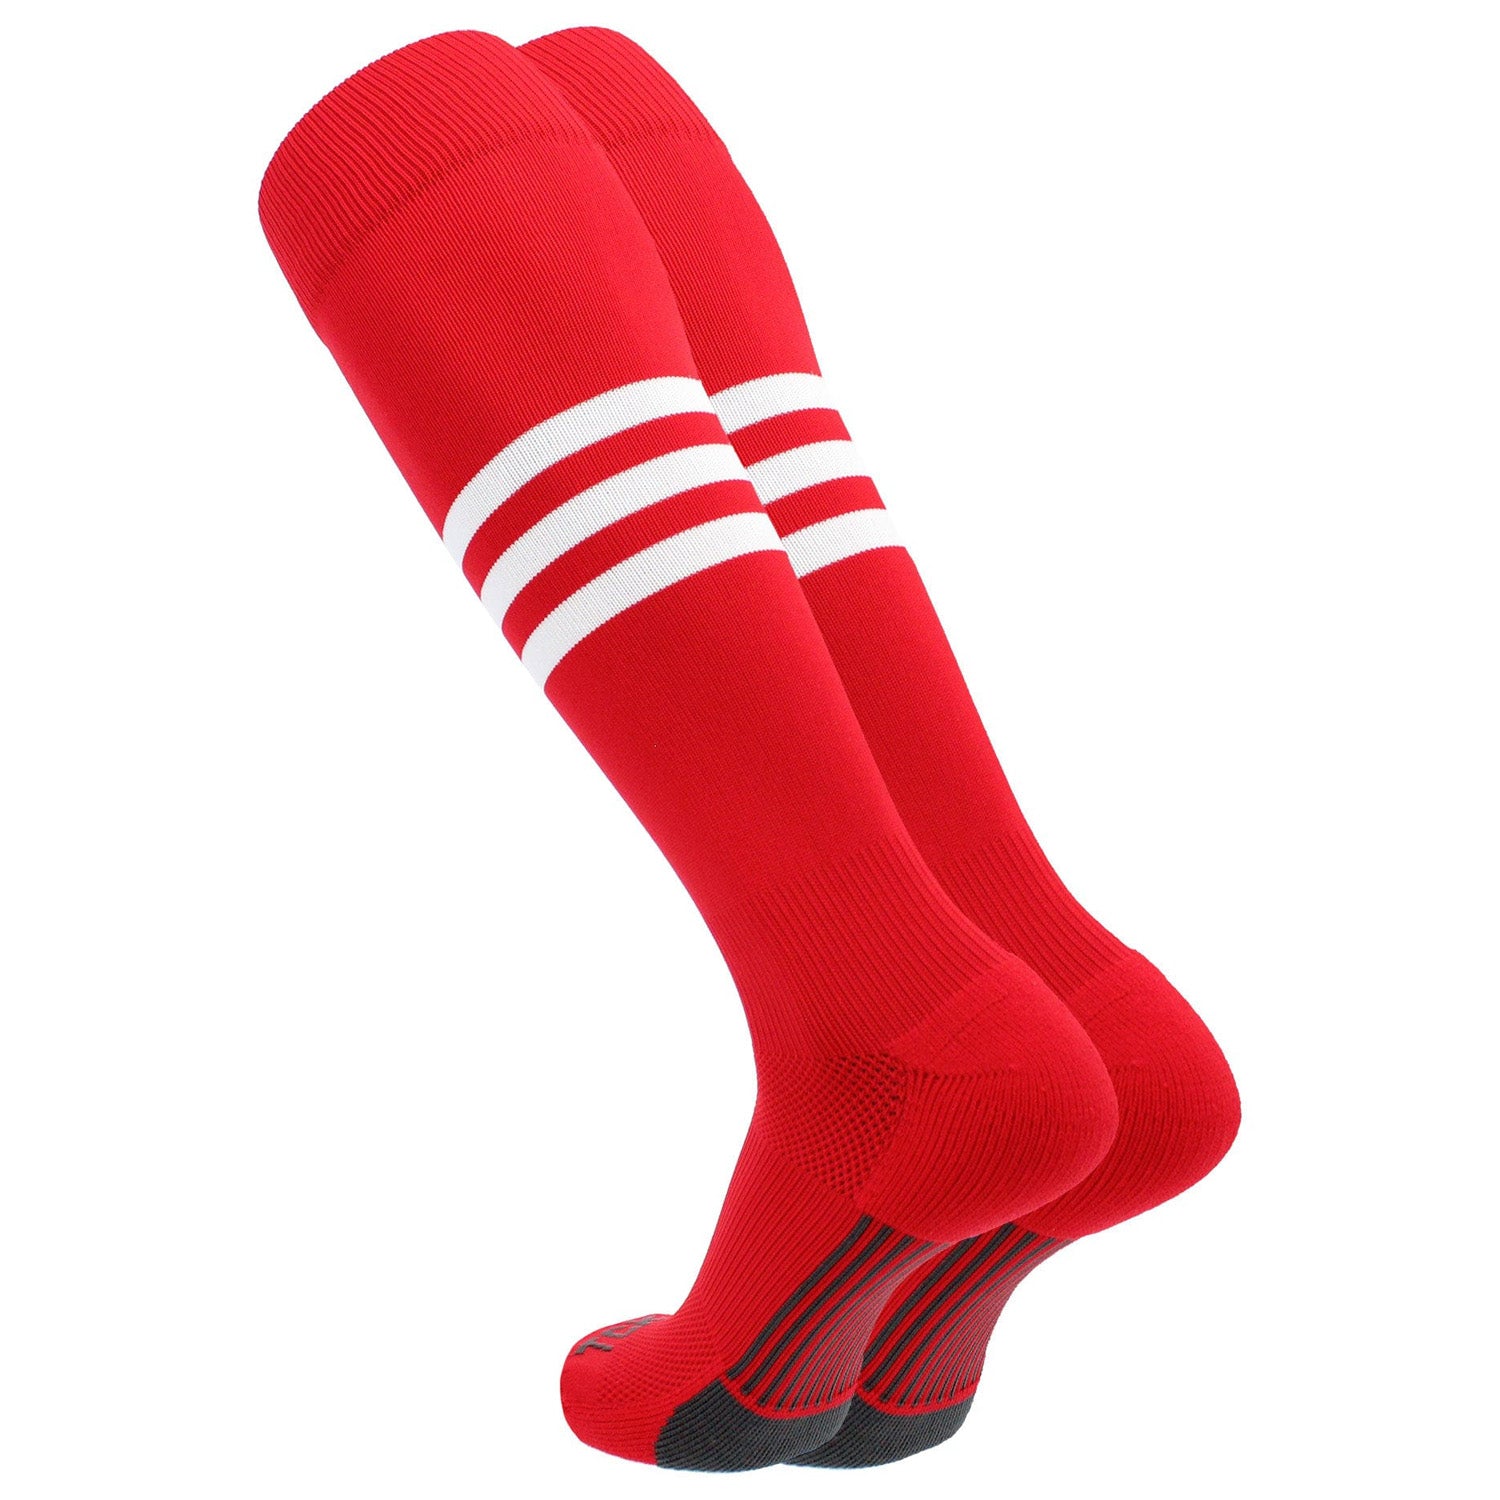 red baseball socks with white stripes